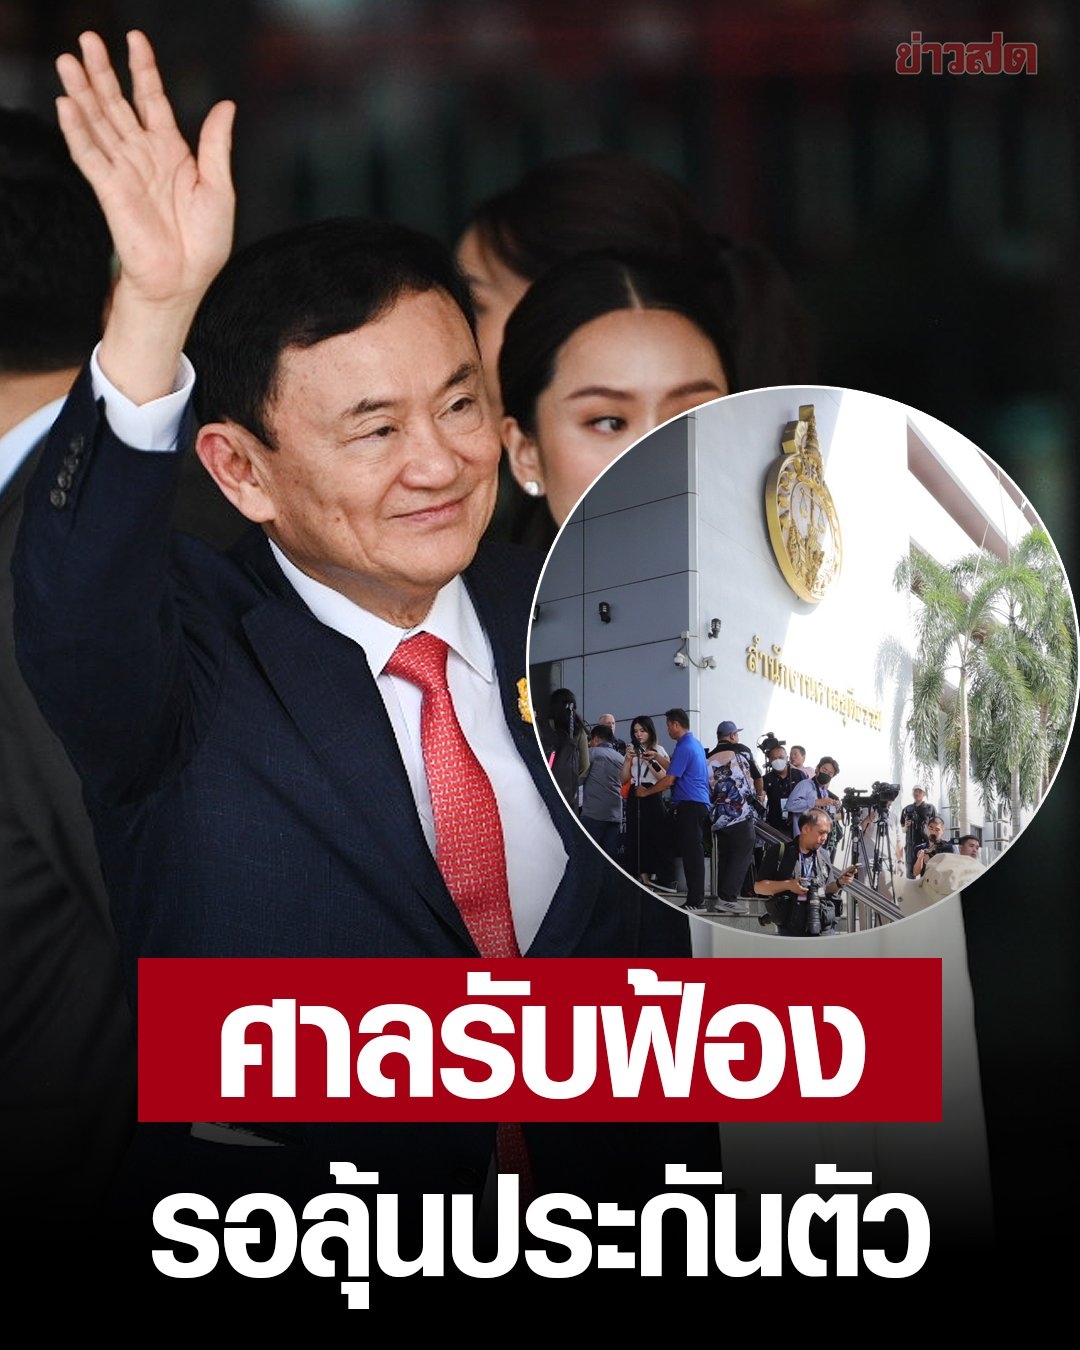 Tòa án Hình sự Thái Lan chính thức truy tố cựu Thủ tướng Thaksin tội khi quân- Ảnh 1.